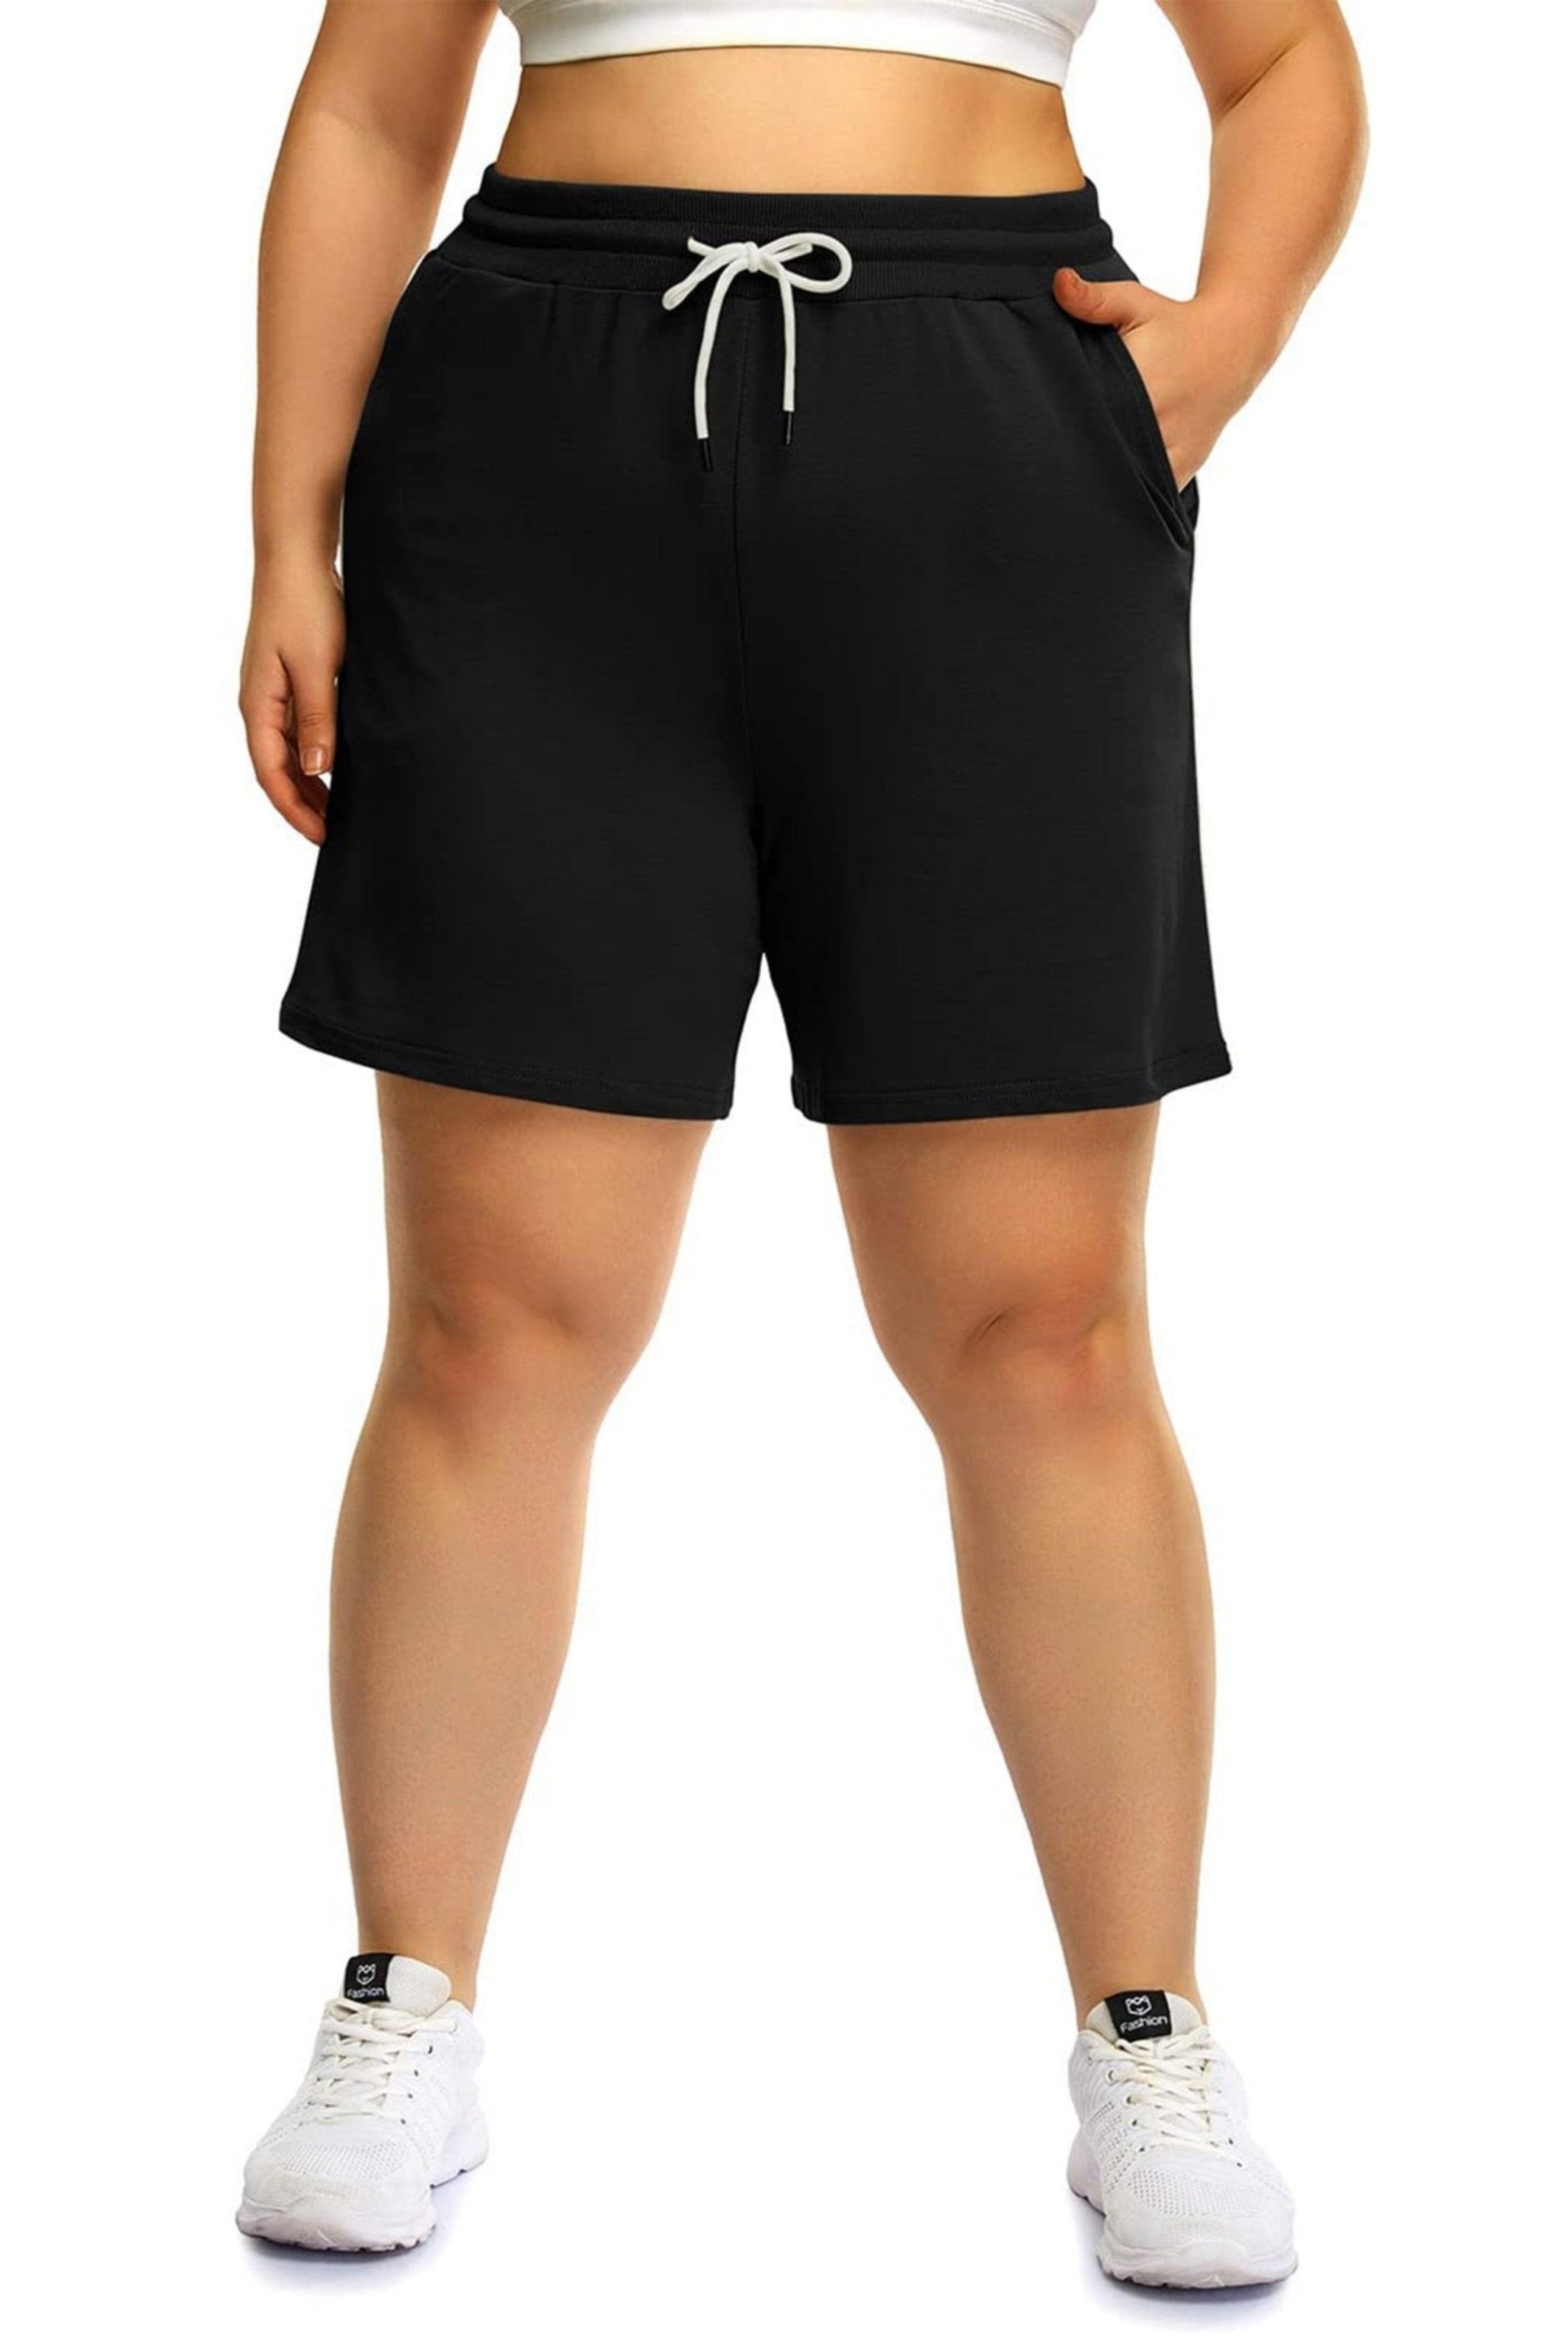 POSESHE Women's Plus Size Shorts Pants - POSESHE